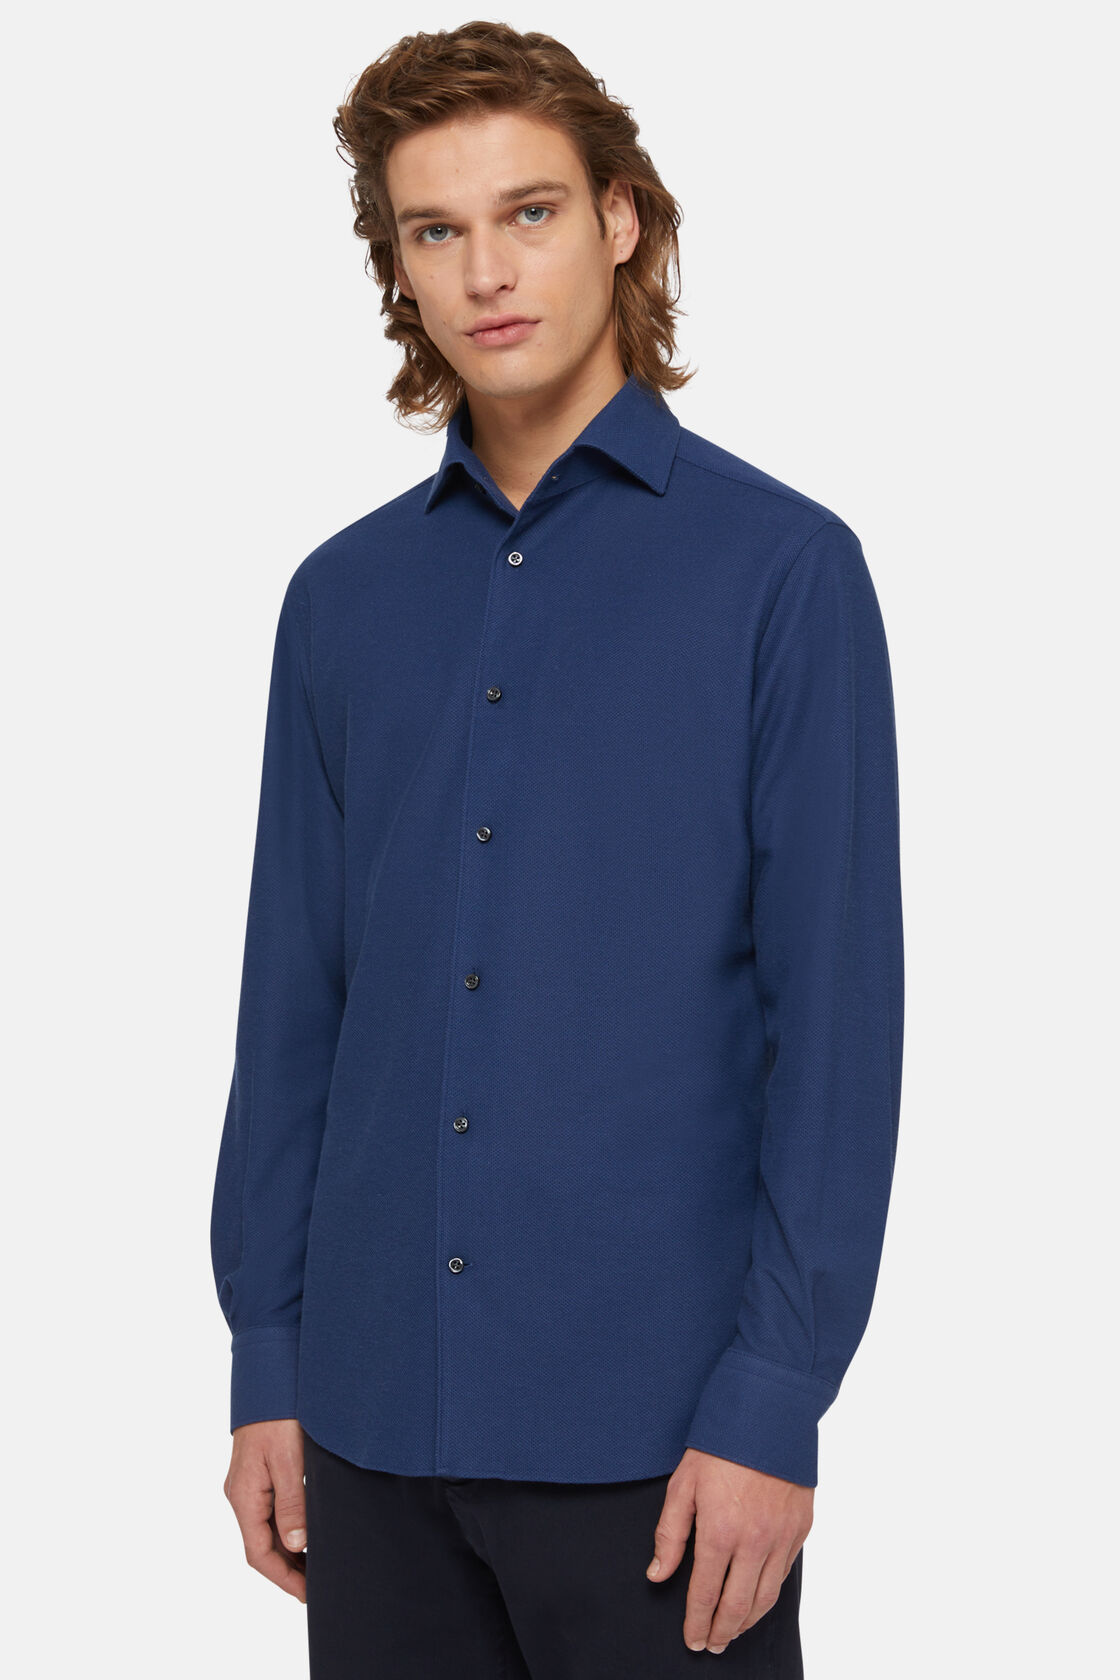 Μπλουζάκι πόλο ζαπονέ από ζέρσεϊ, κανονικής εφαρμογής, Navy blue, hi-res